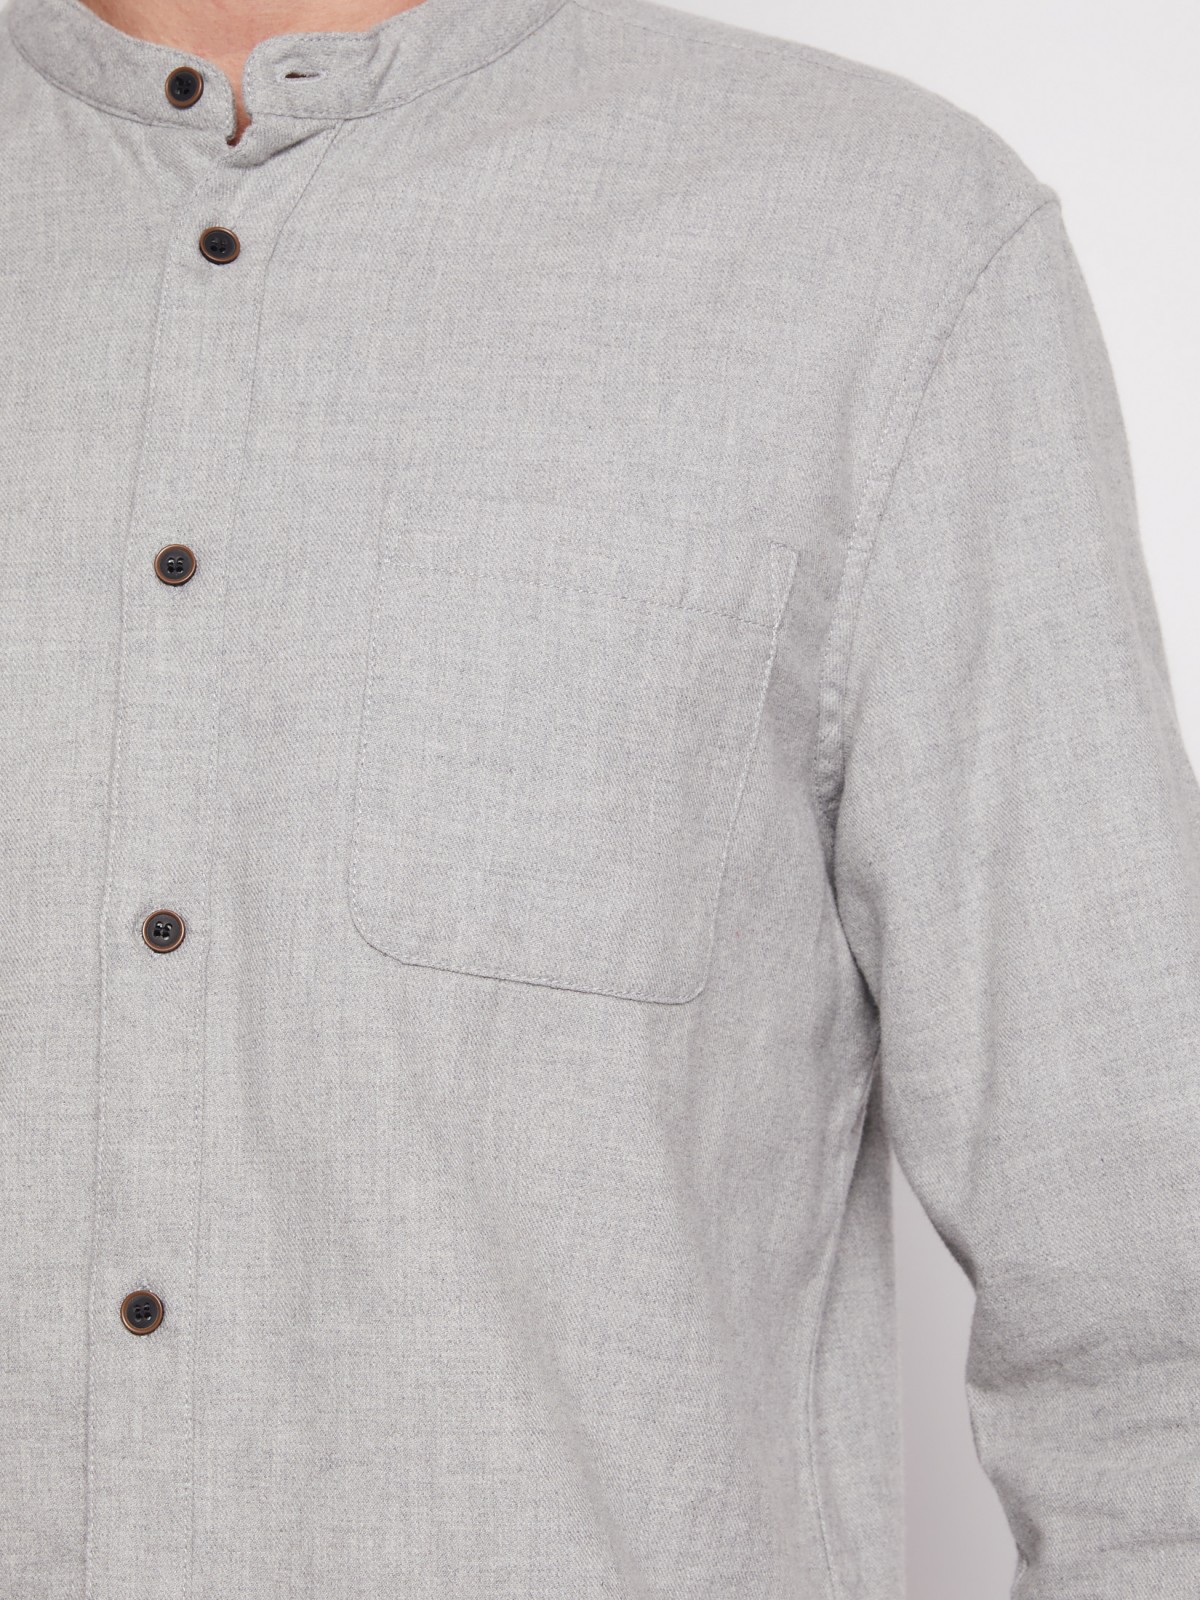 Фланелевая рубашка с воротником-стойкой zolla 211342191021, цвет серый, размер S - фото 5